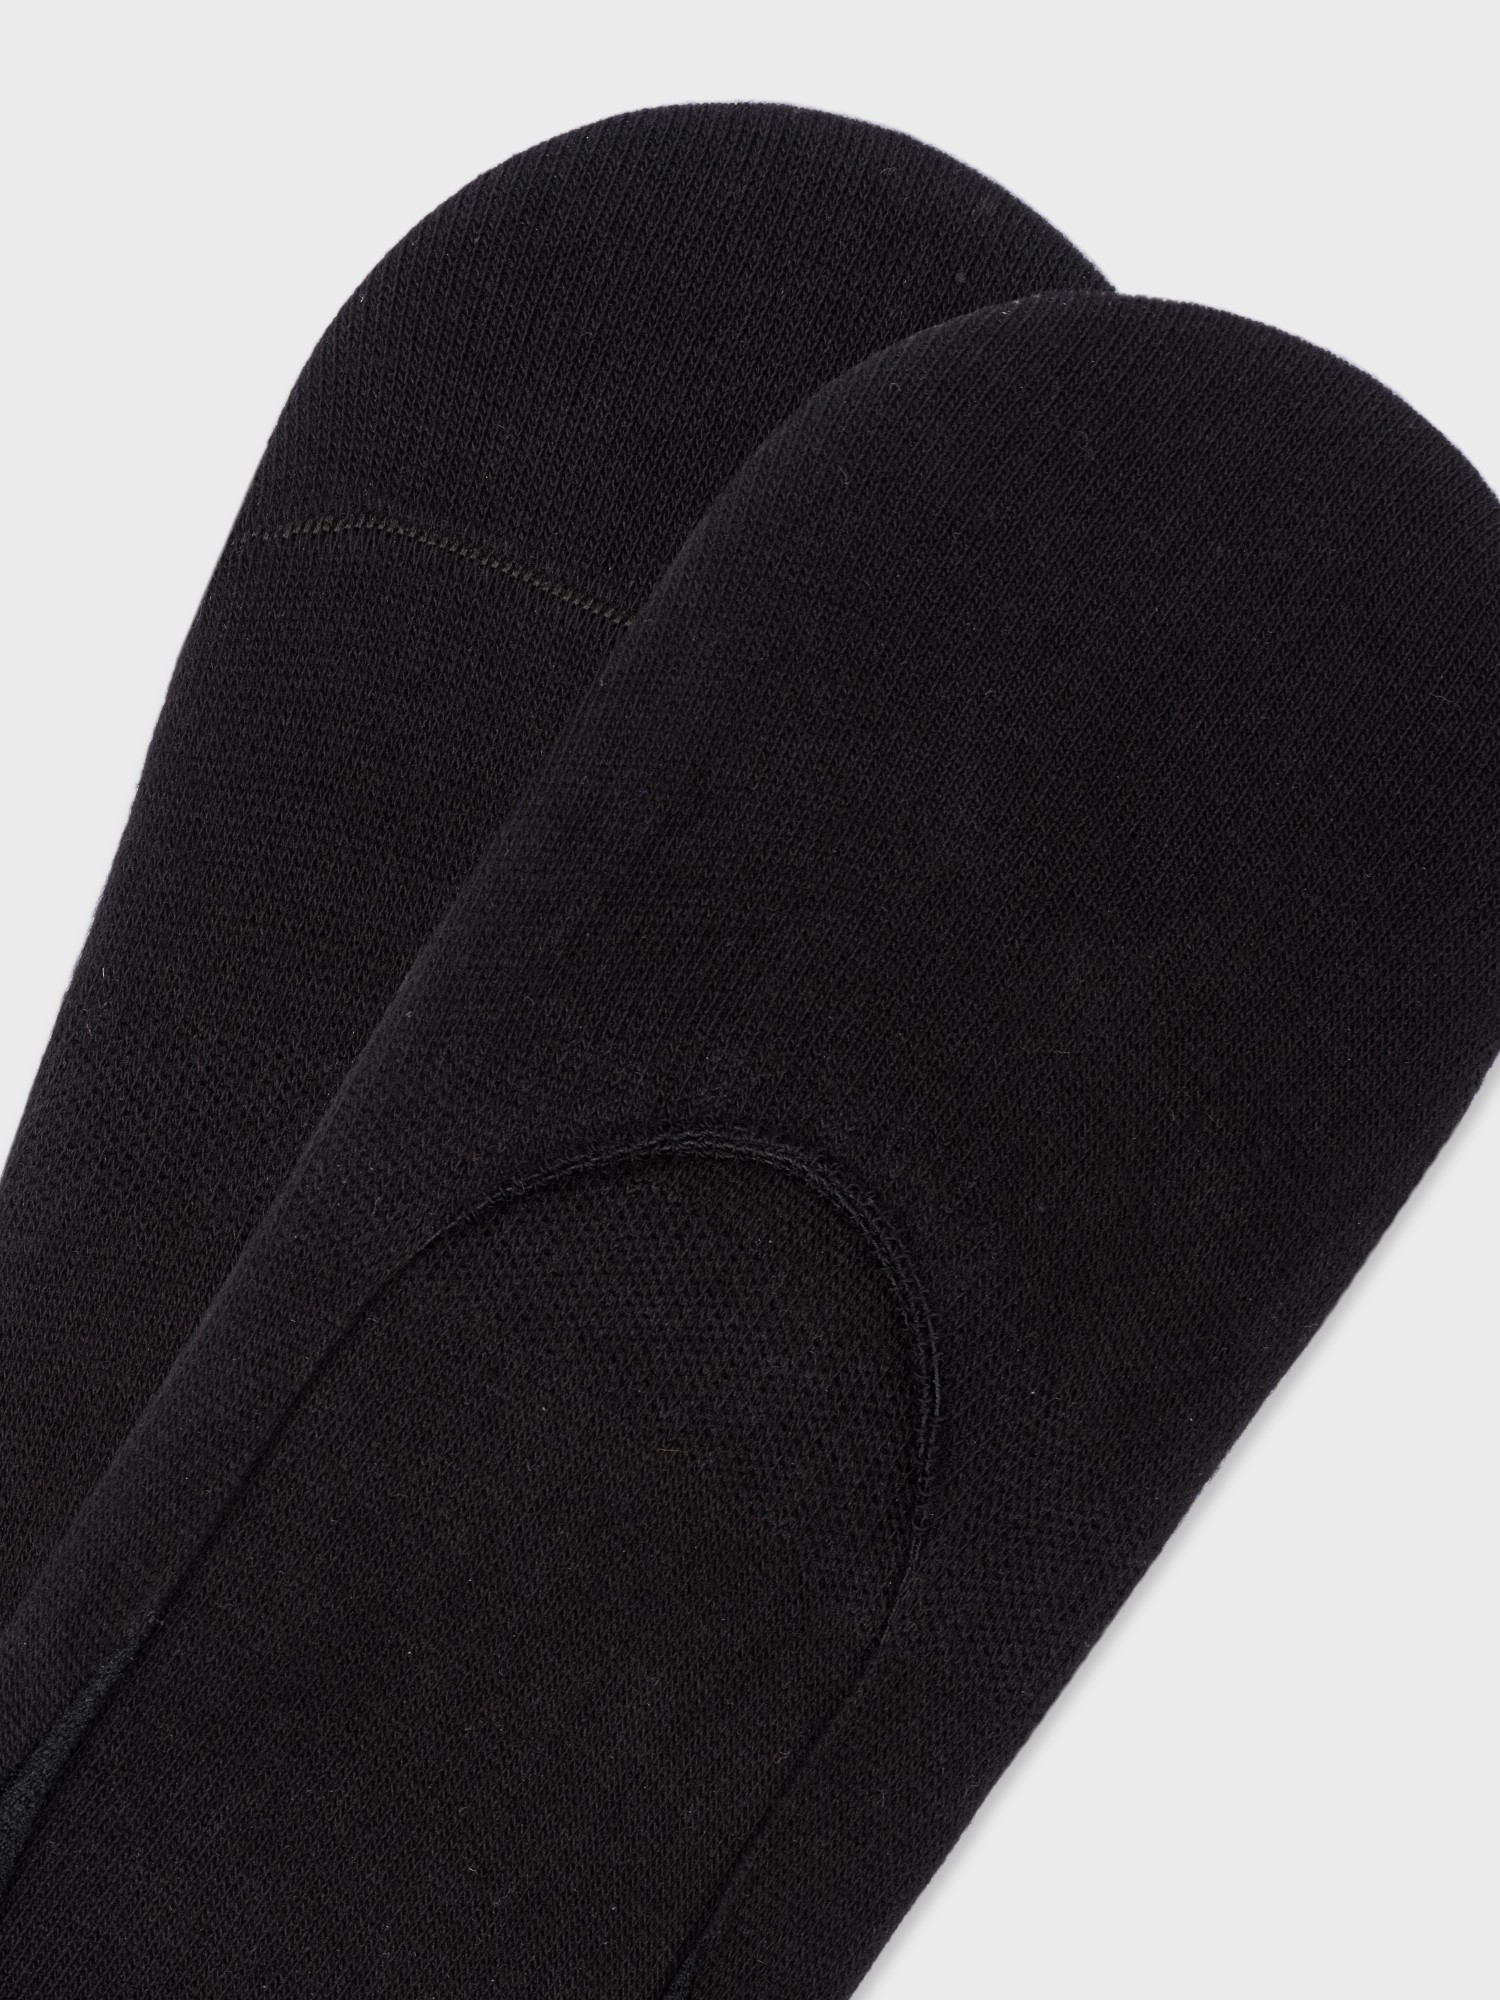 Носки-следки мужские черные 20line ISK0021 - фото 2